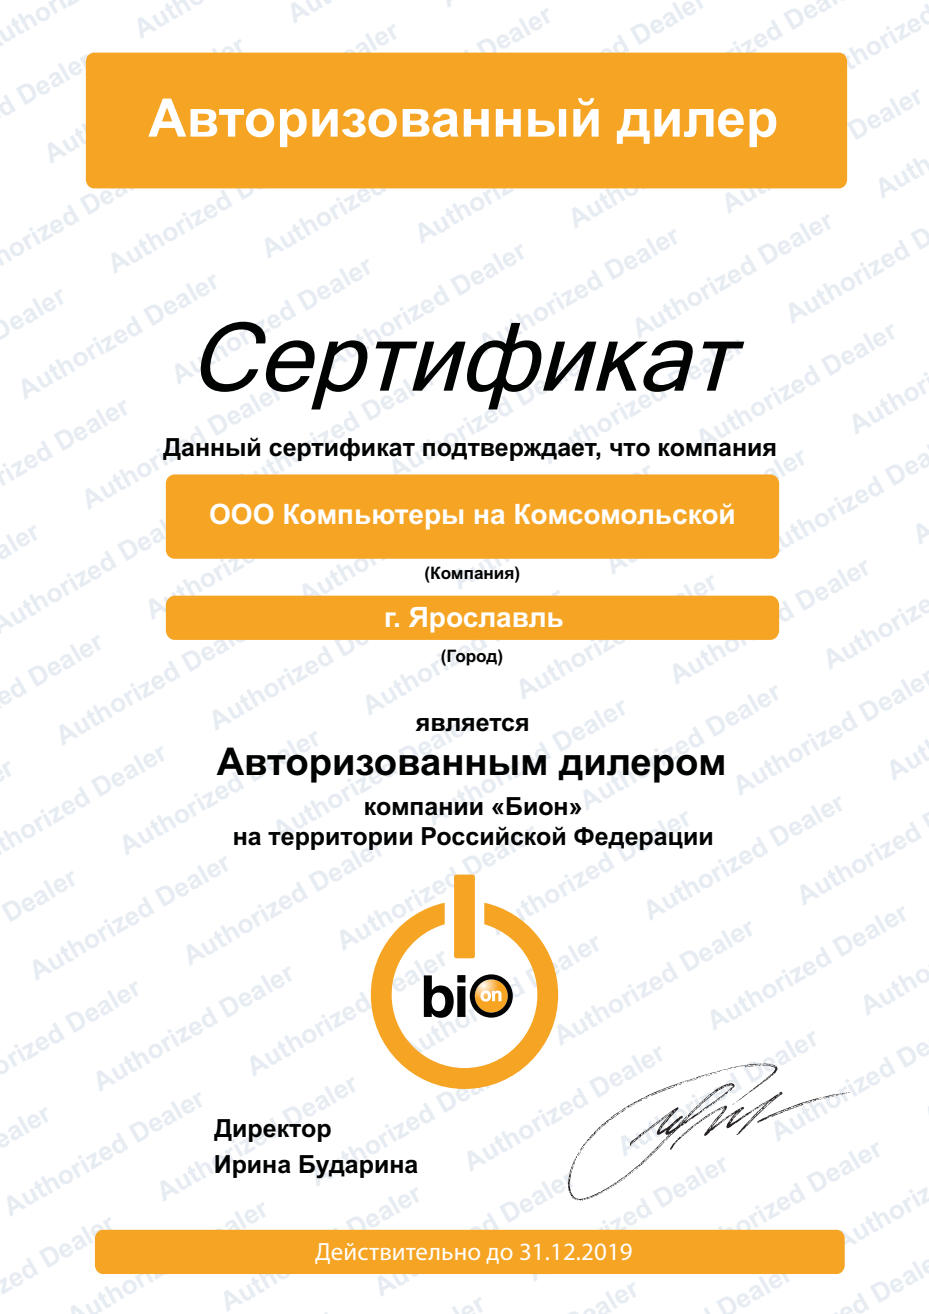 Сертификат "Авторизованный дилер NETLAB"